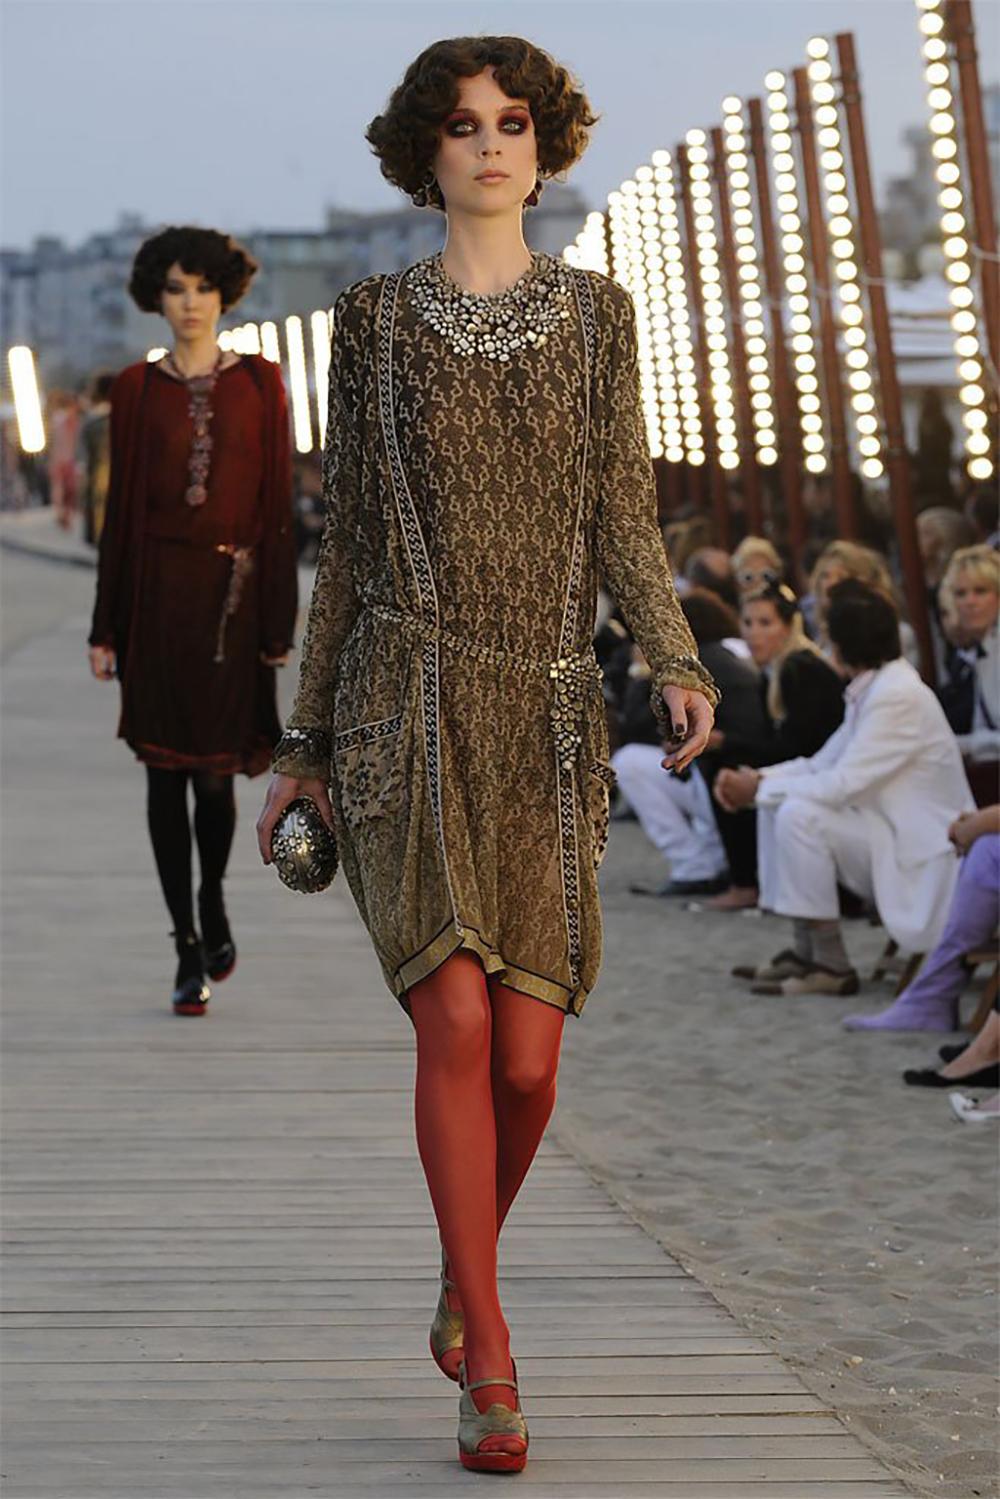 Fabuleuse robe Chanel scintillante avec ceinture de la Collection Cruise Catwalk of Paris / VENICE de M. Karl Lagerfeld.
Taille 40 FR. Condit est en parfait état, sans aucun signe d'usure.
